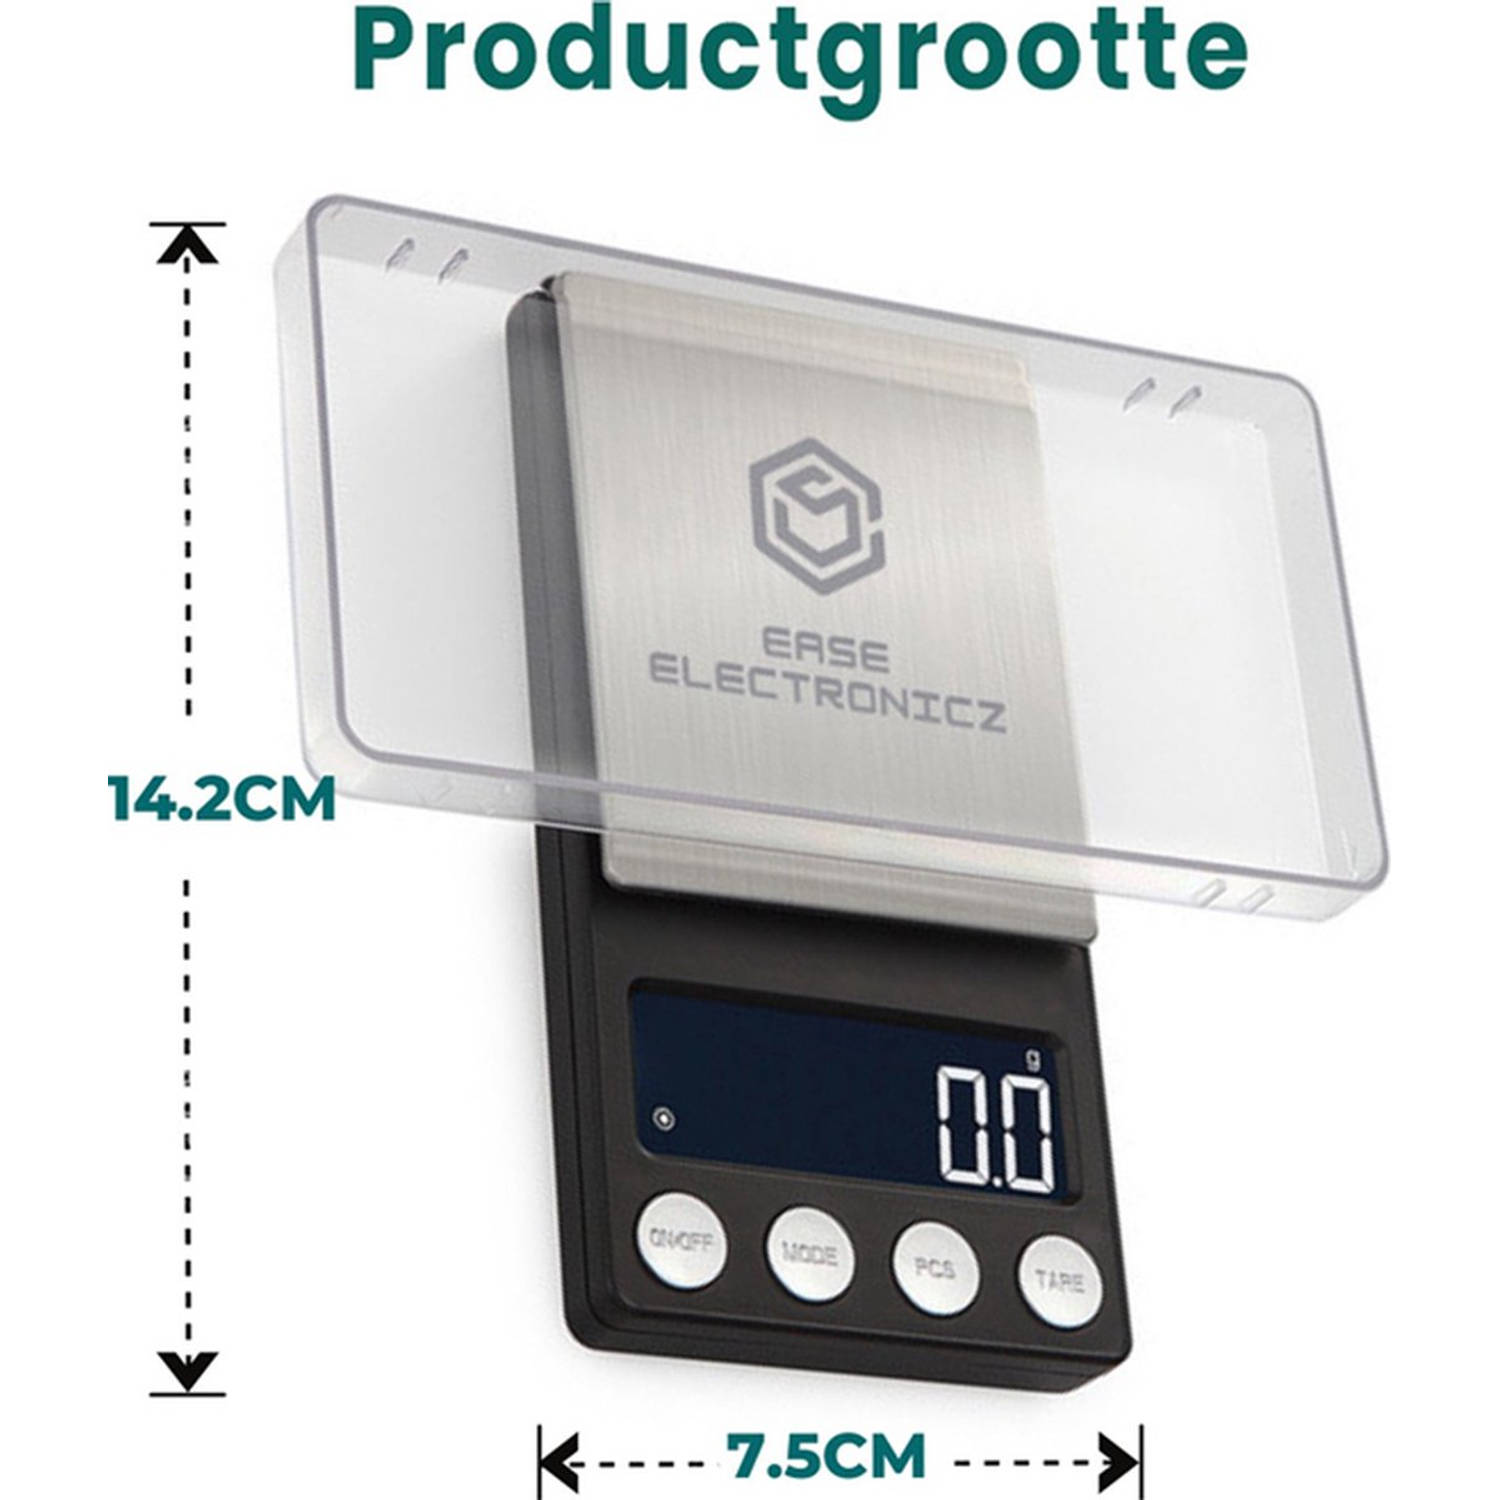 Centrum Accumulatie Korst Ease Electronicz digitale mini precisie keukenweegschaal - 0,01 tot 200  gram - 14.2 x 7.5 cm - pocket scale op batterij | Blokker